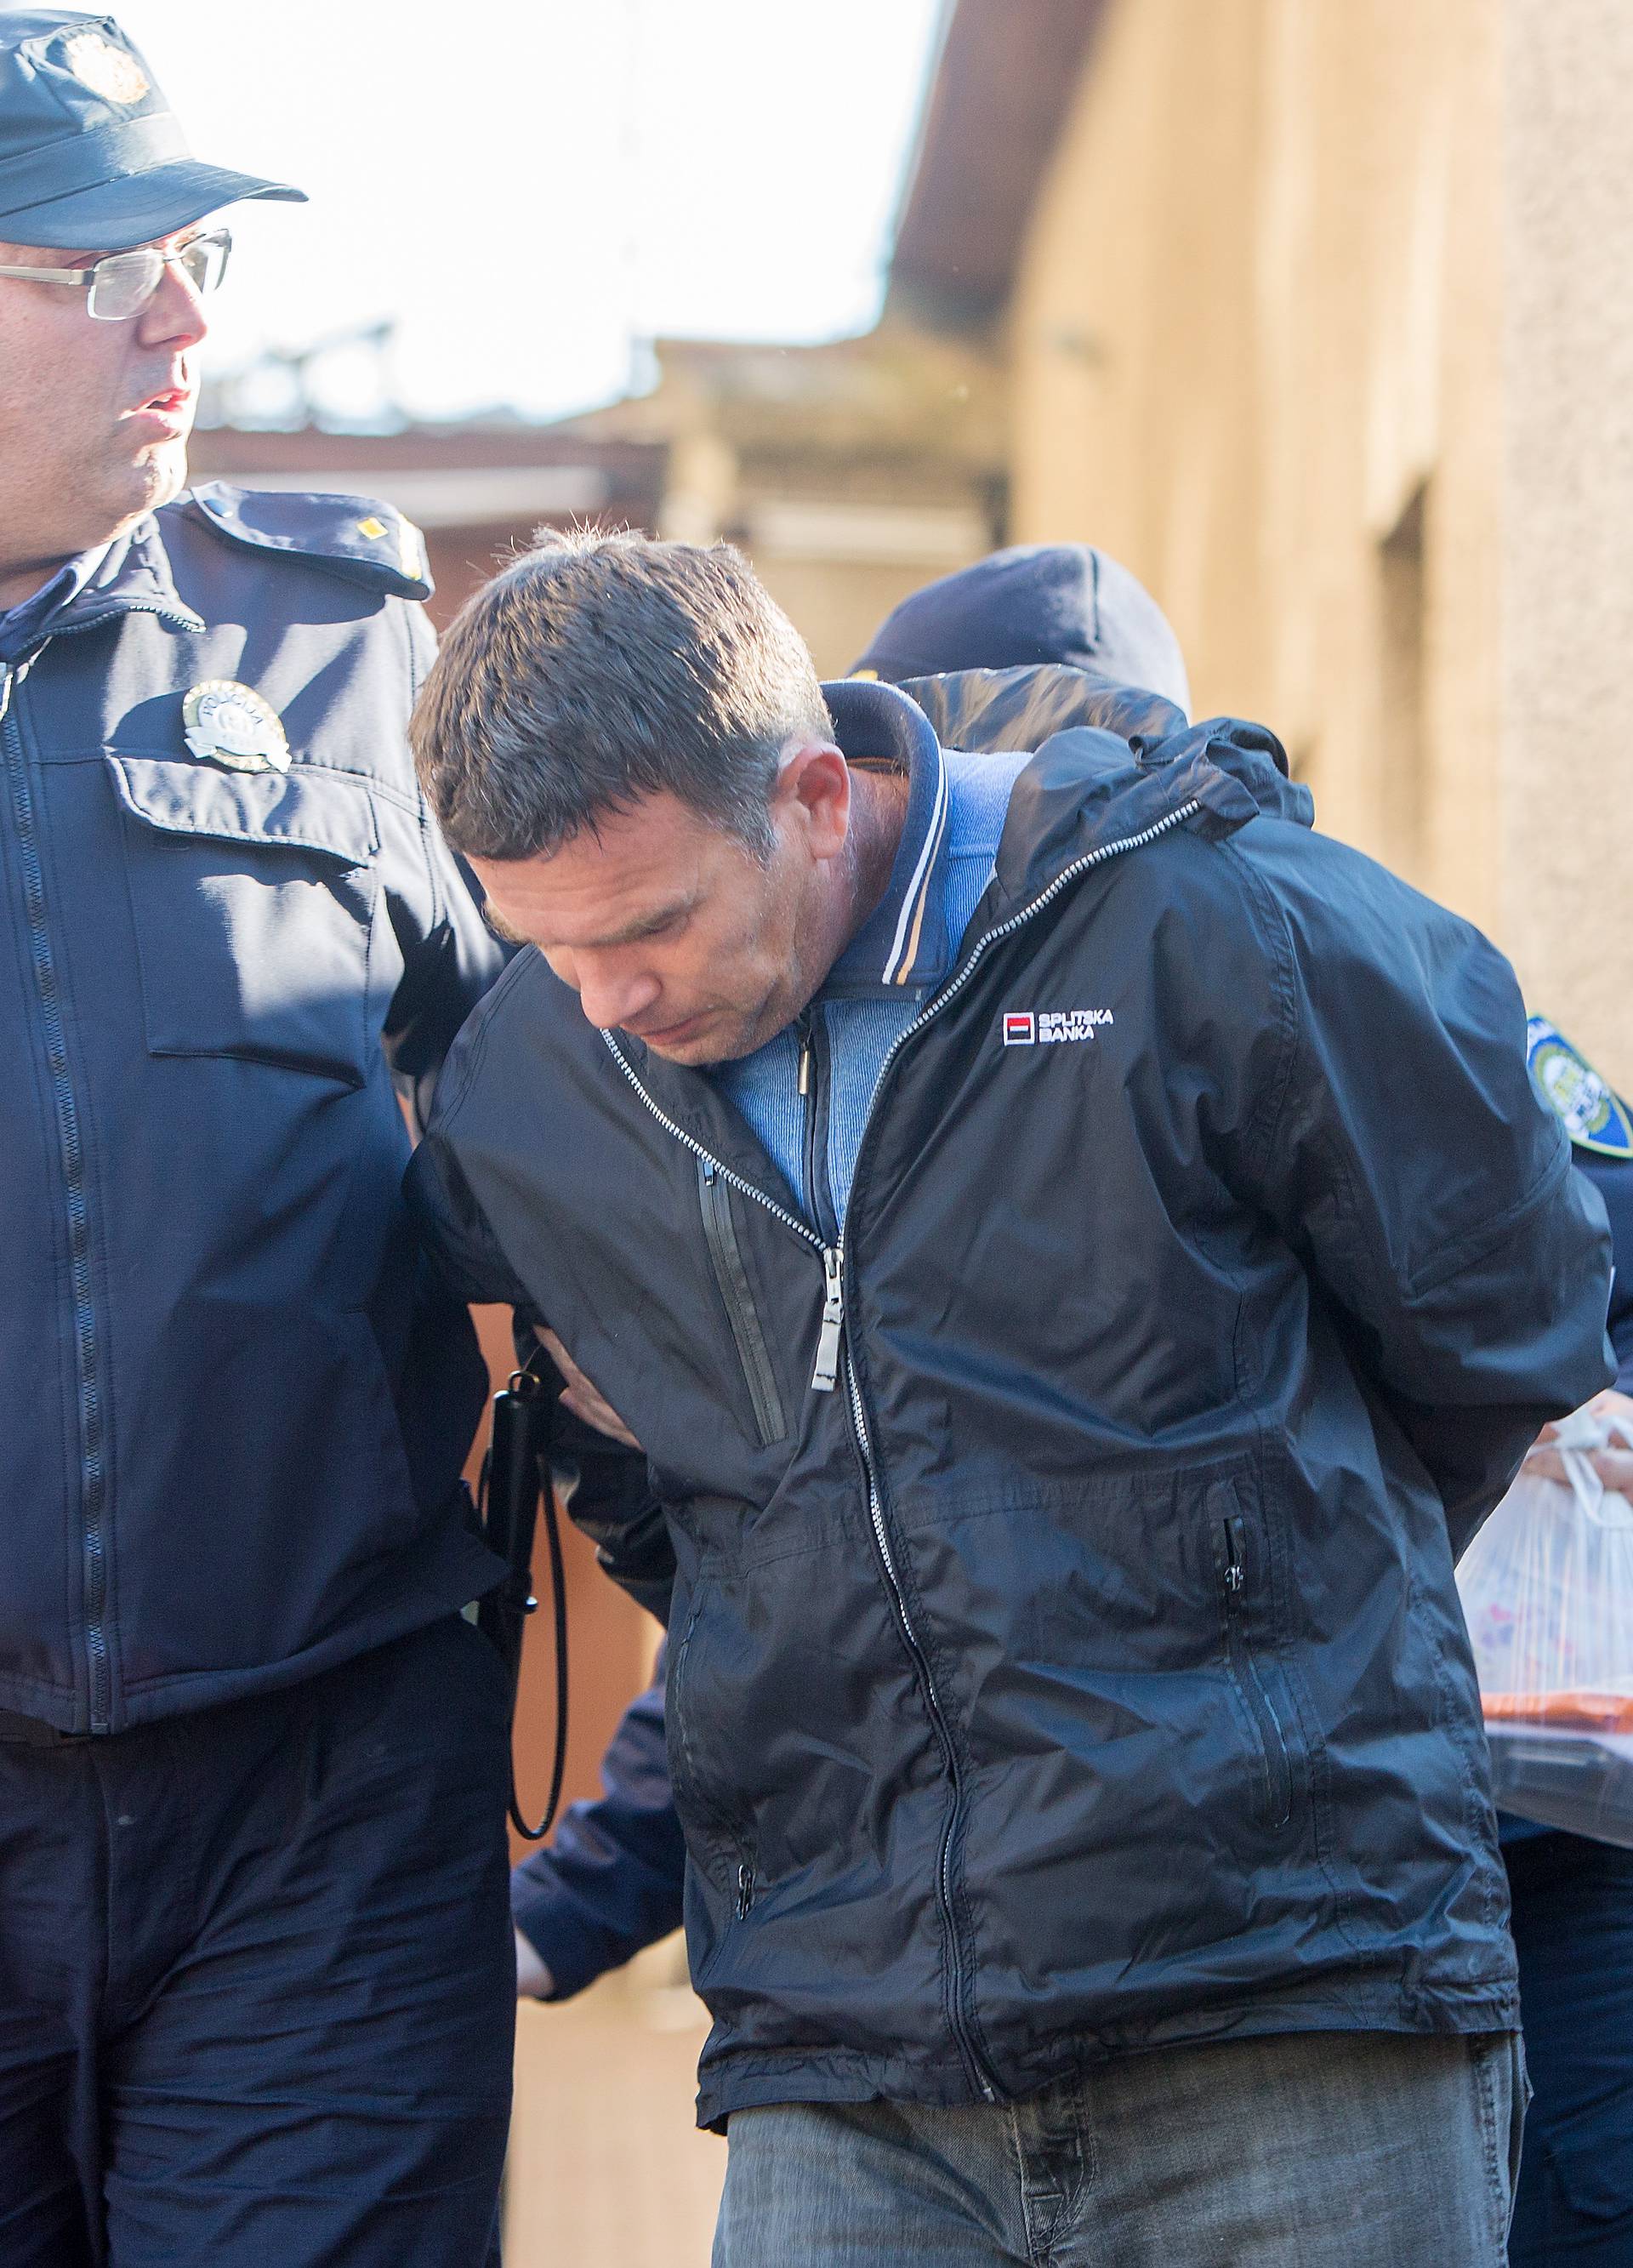 Osumnjičeni za smrt sestara Filipović još ostaje u pritvoru